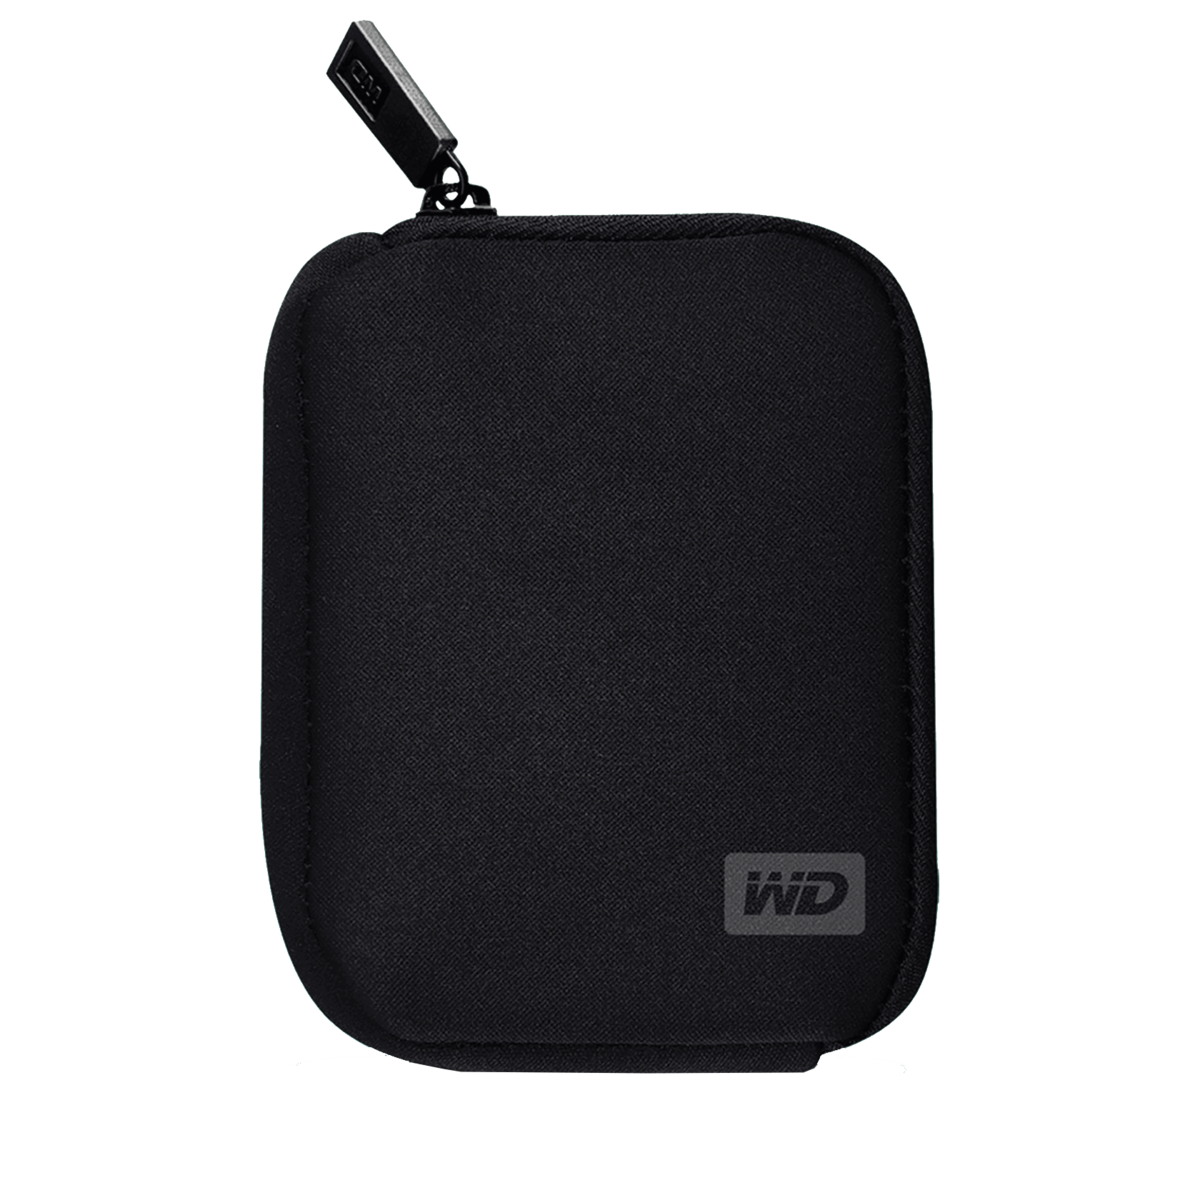 WD My Passport External Hard Drive Soft Carrying Case - Walmart.com